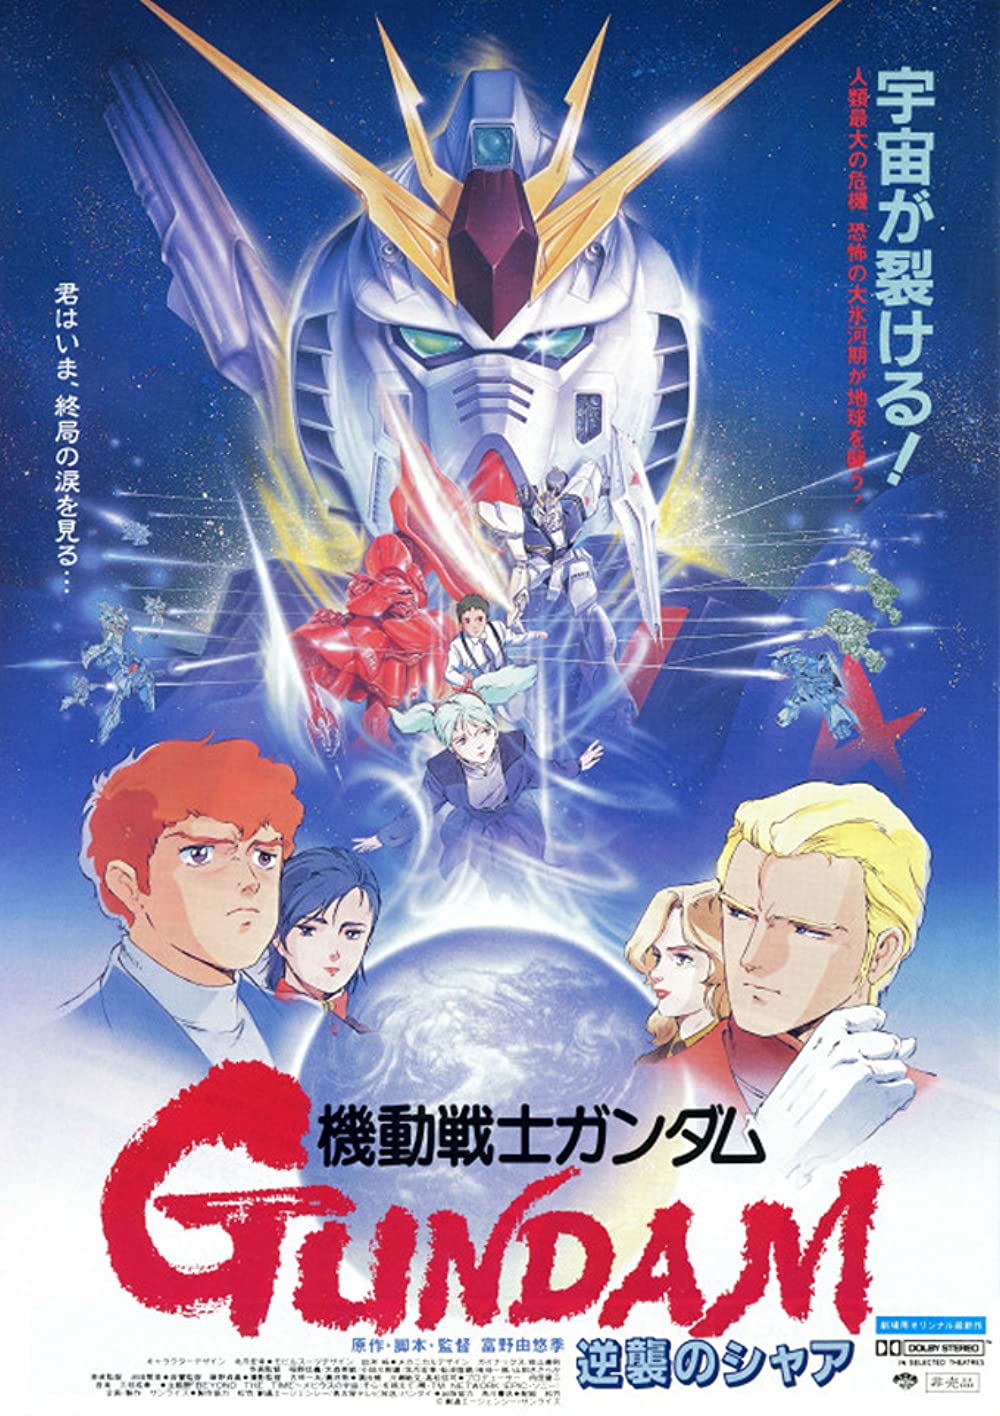 Mobile-Suit-Gundam-anime-movies